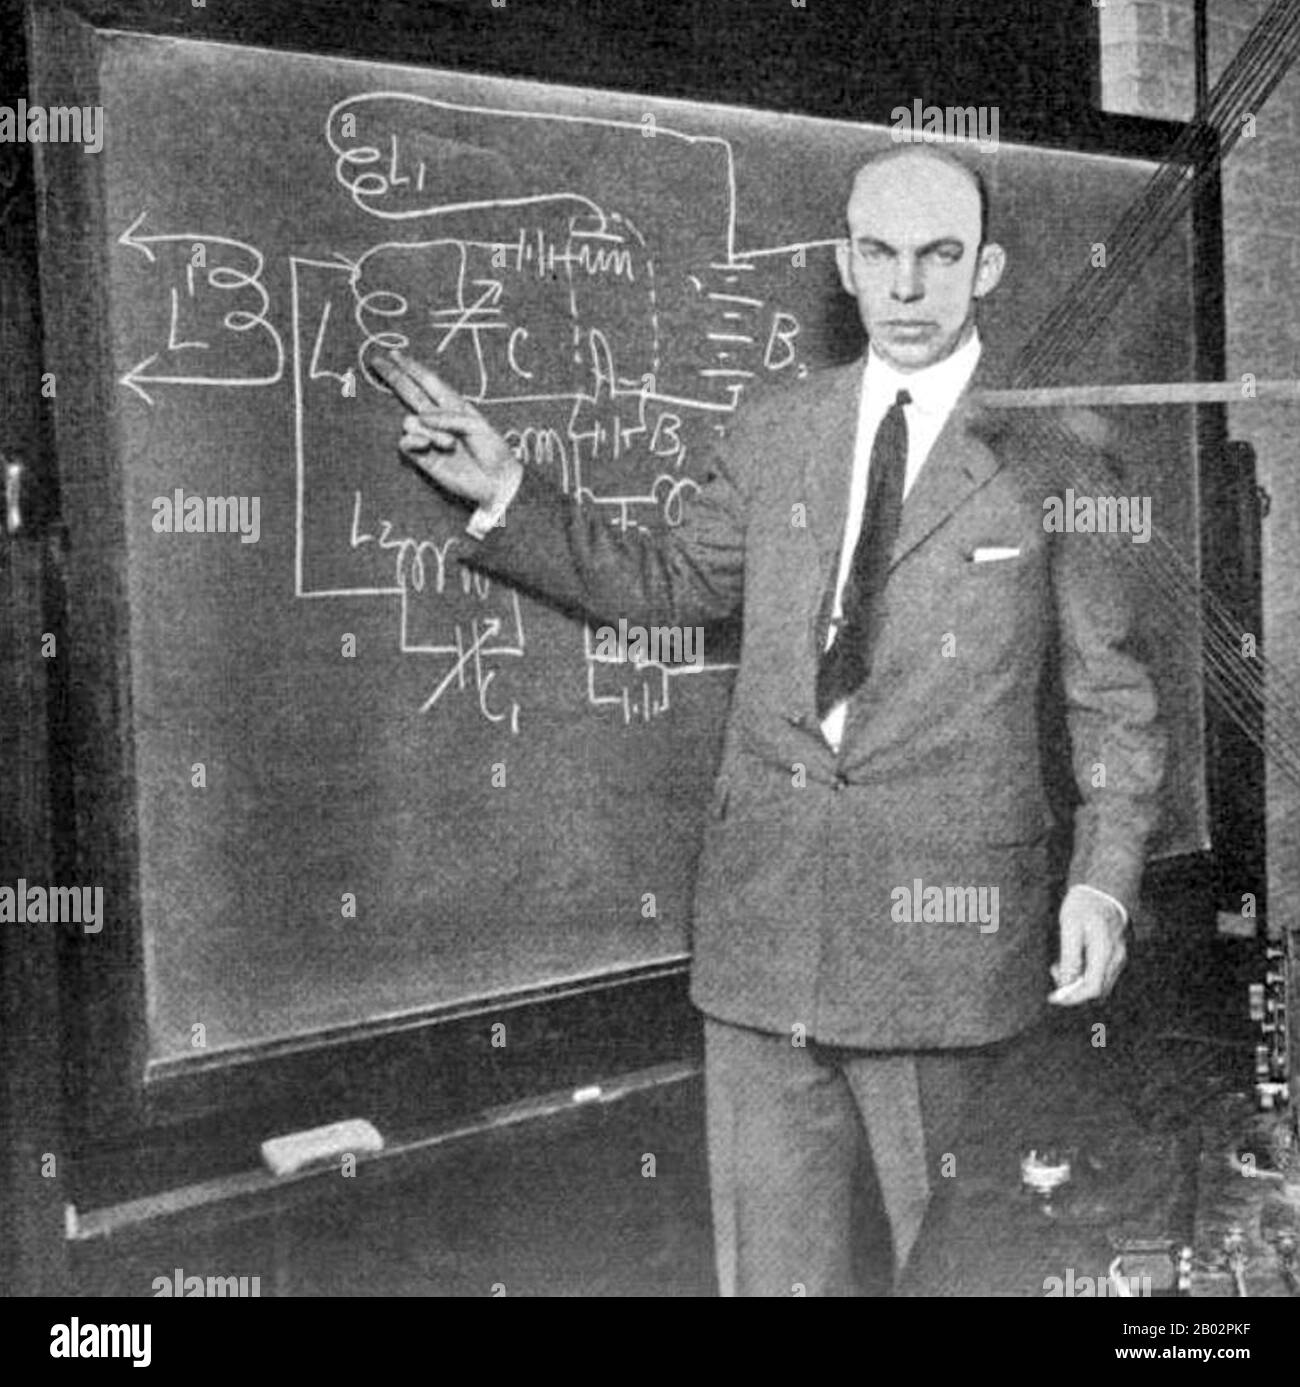 Edwin Howard Armstrong (18 décembre 1890 – 31 janvier 1954) était ingénieur et inventeur américain de l'électricité. Il a été appelé "l'inventeur le plus prolifique et le plus influent de l'histoire de la radio". Il a inventé le circuit régénérateur alors qu'il était premier cycle et l'a breveté en 1914, suivi du circuit super régénérateur en 1922, et du récepteur superhétérodyne en 1918. Armstrong a également été l'inventeur de la transmission radio à modulation de fréquence moderne (FM). Armstrong est né à New York, New York, en 1890. Il a étudié à l'Université de Columbia. Plus tard, il est devenu professeur à Columbia Banque D'Images